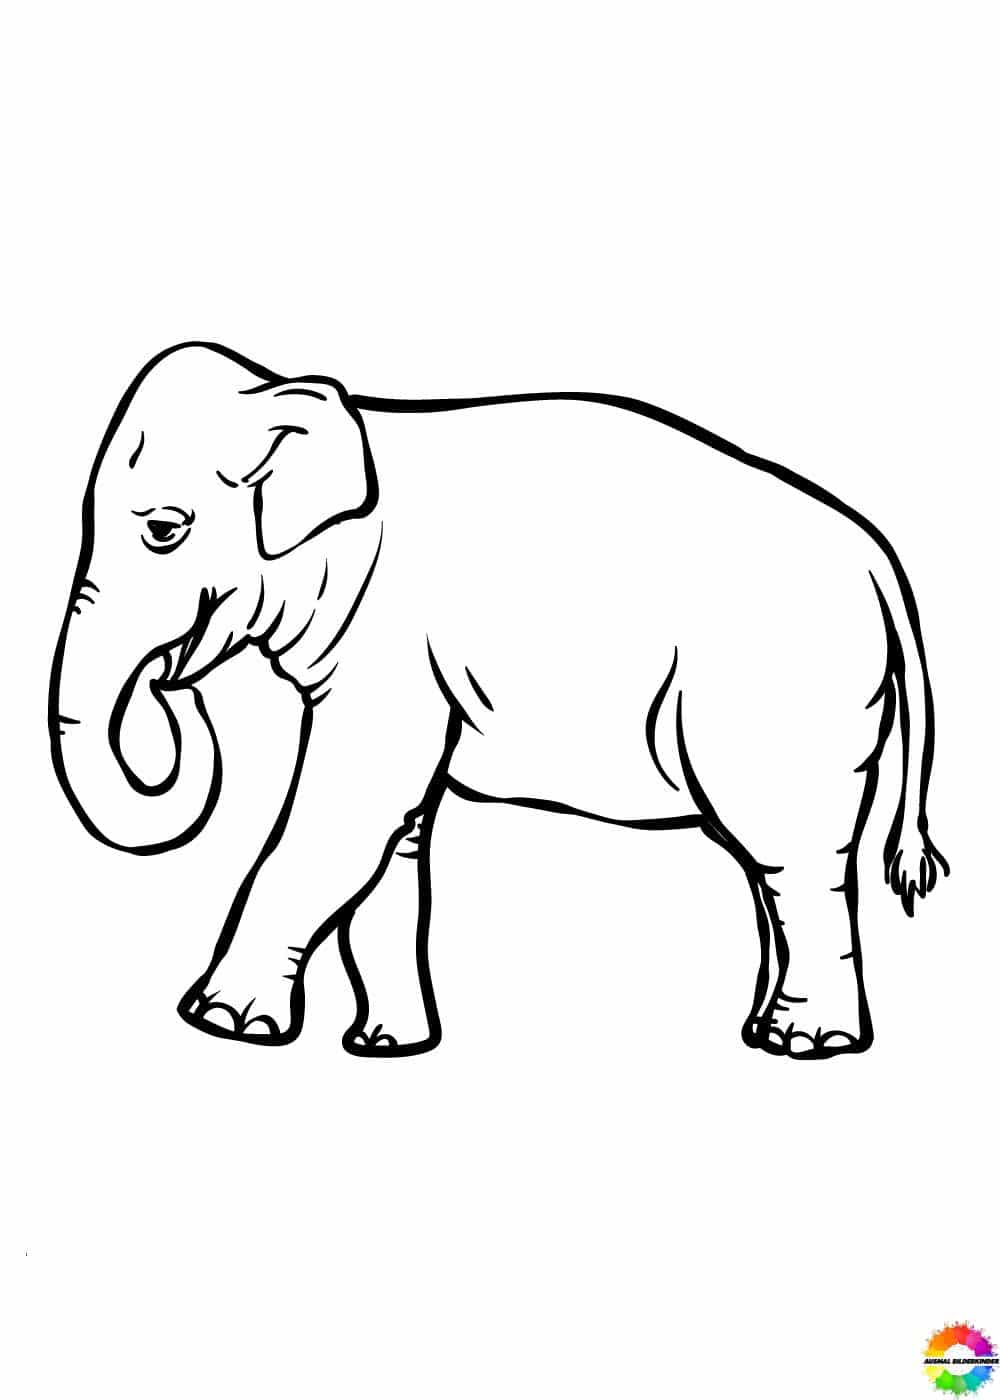 Elefant 28